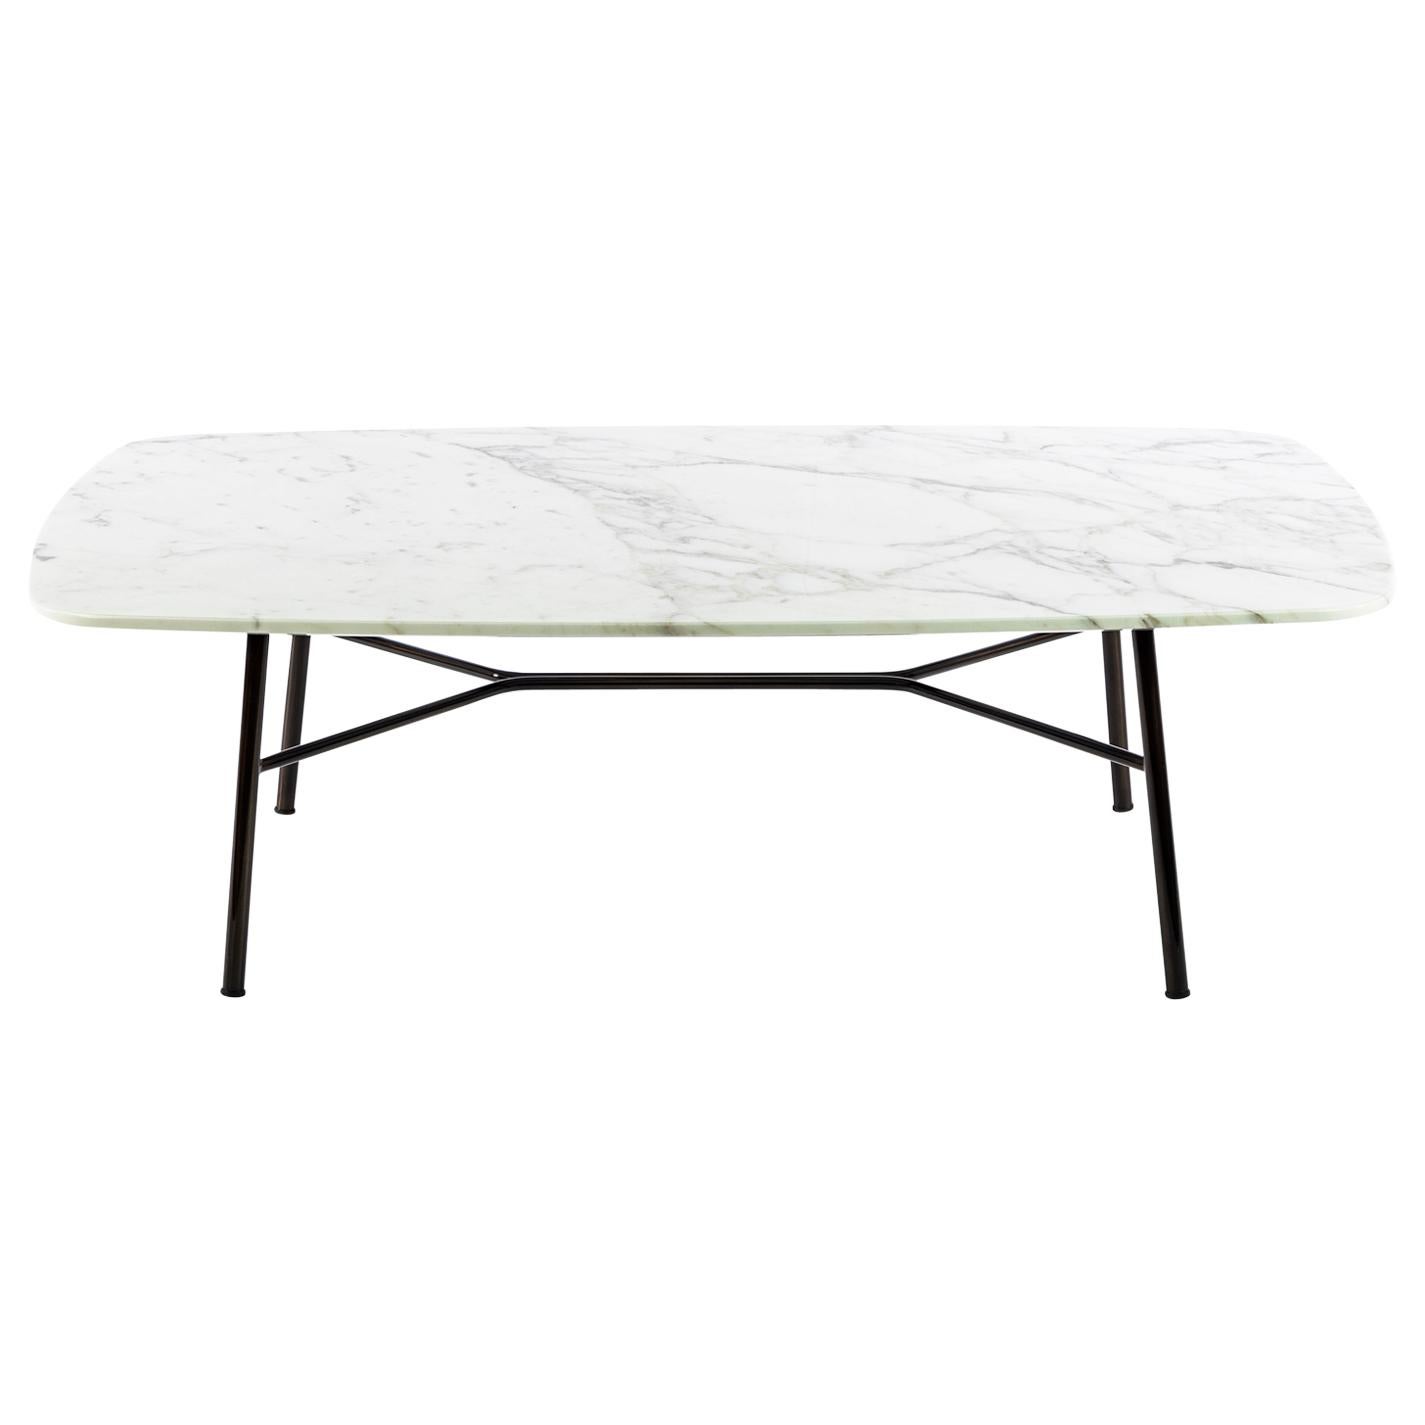 Petite table Yuki, cadre en métal, couleur blanche, design, table basse, verre, marbre en vente